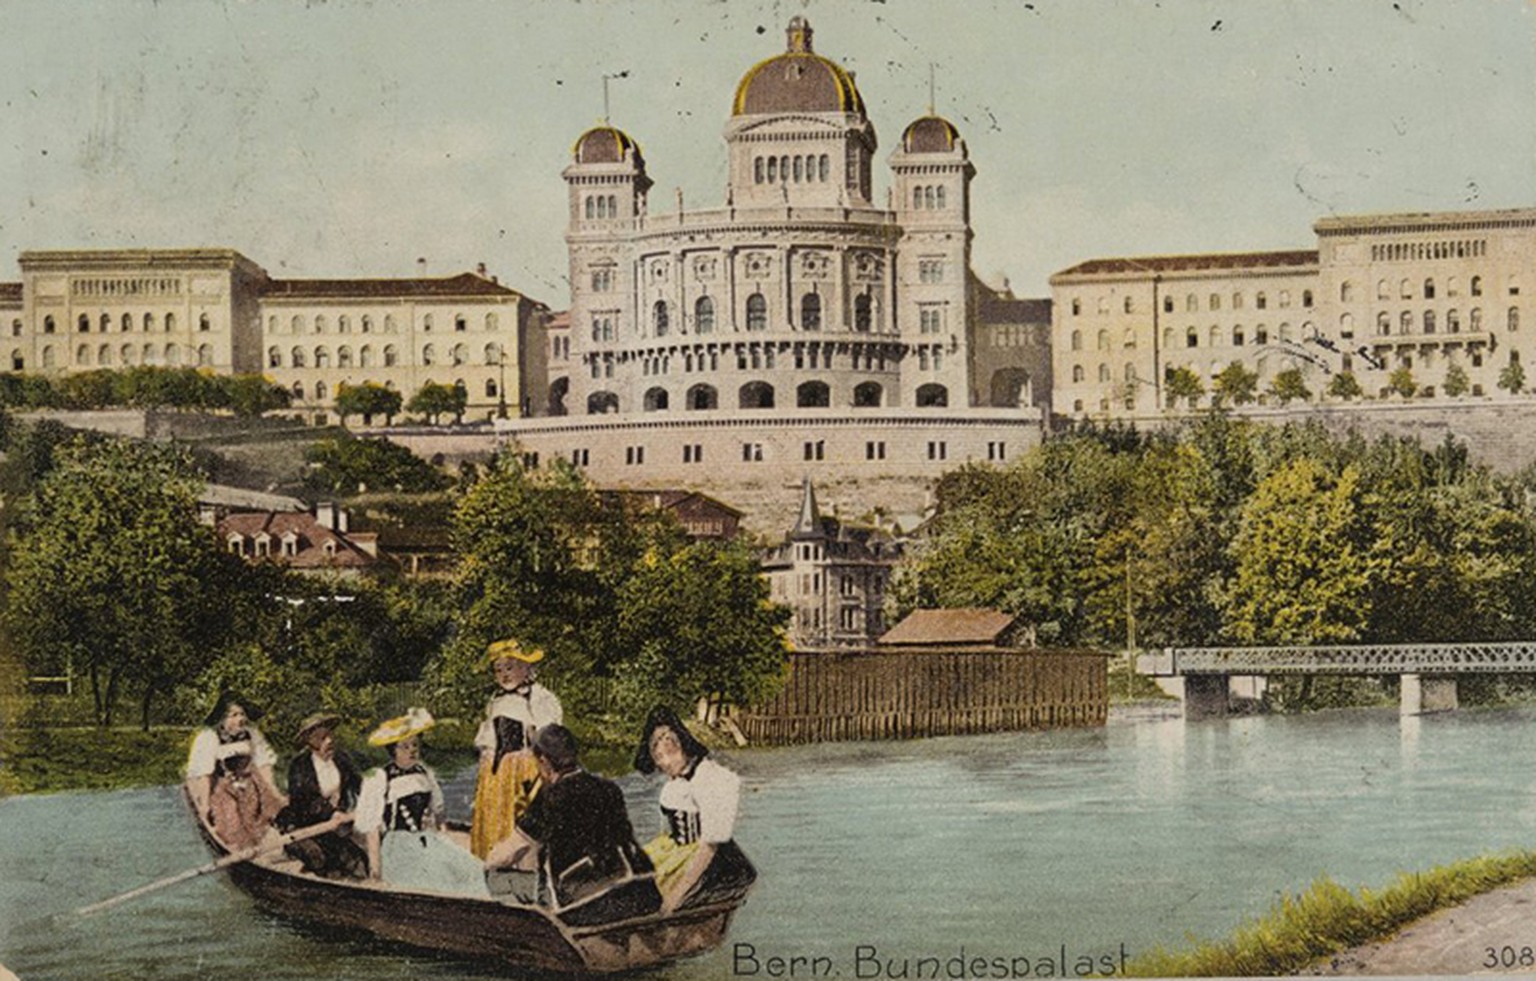 Auf einer Postkarte von 1908 wird das Bundeshaus als «Berner Bundespalast» bezeichnet.